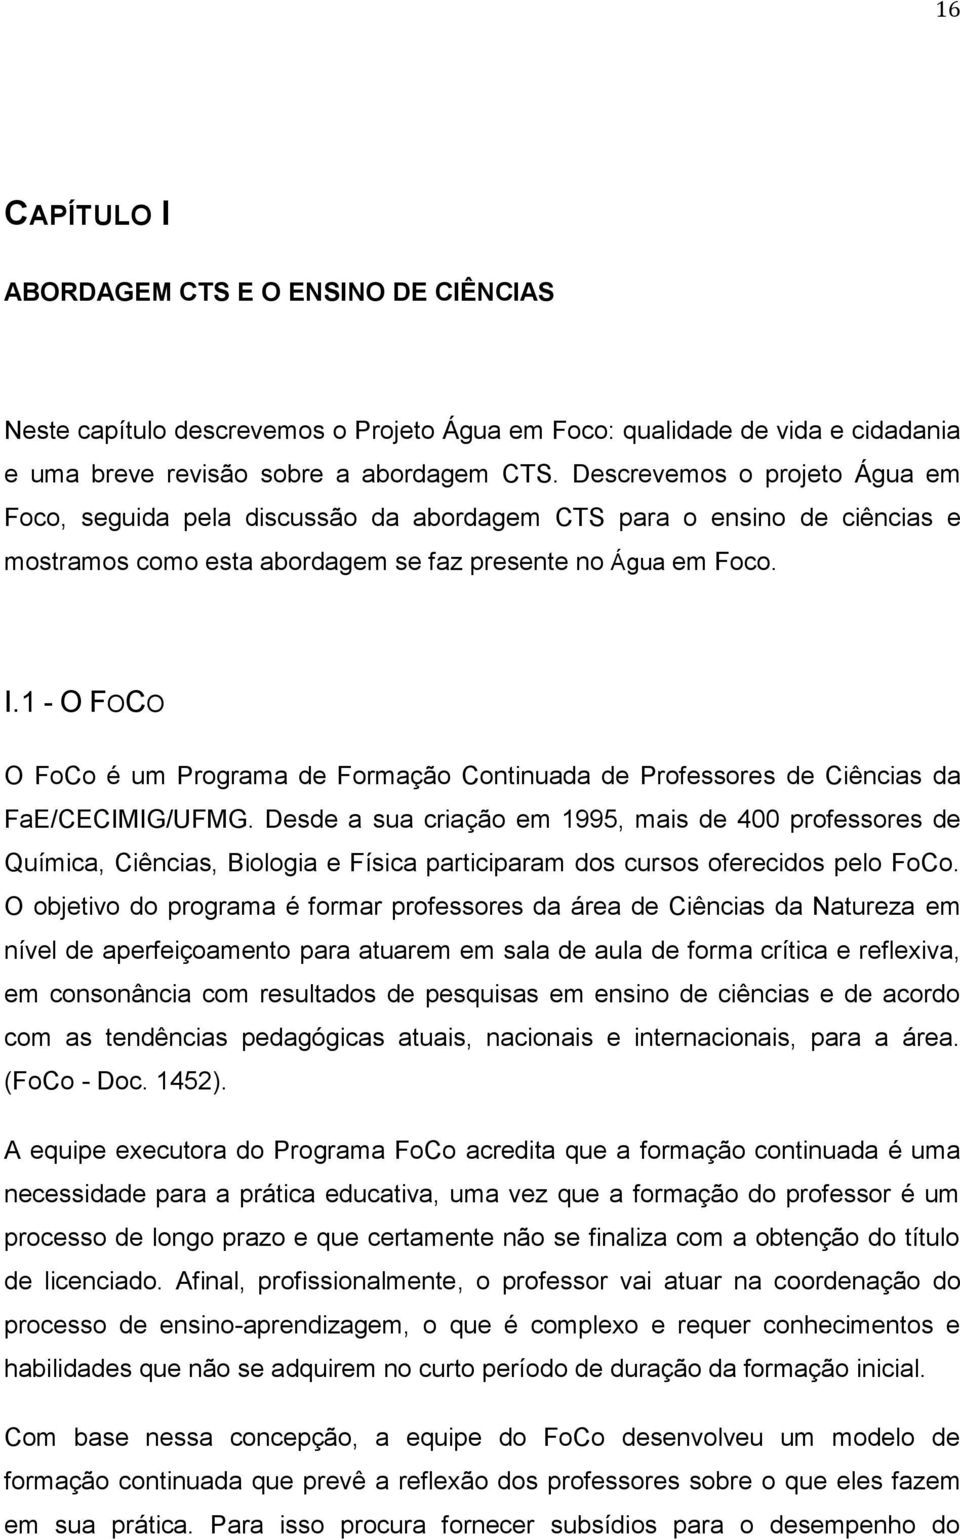 1 - O FOCO O FoCo é um Programa de Formação Continuada de Professores de Ciências da FaE/CECIMIG/UFMG.